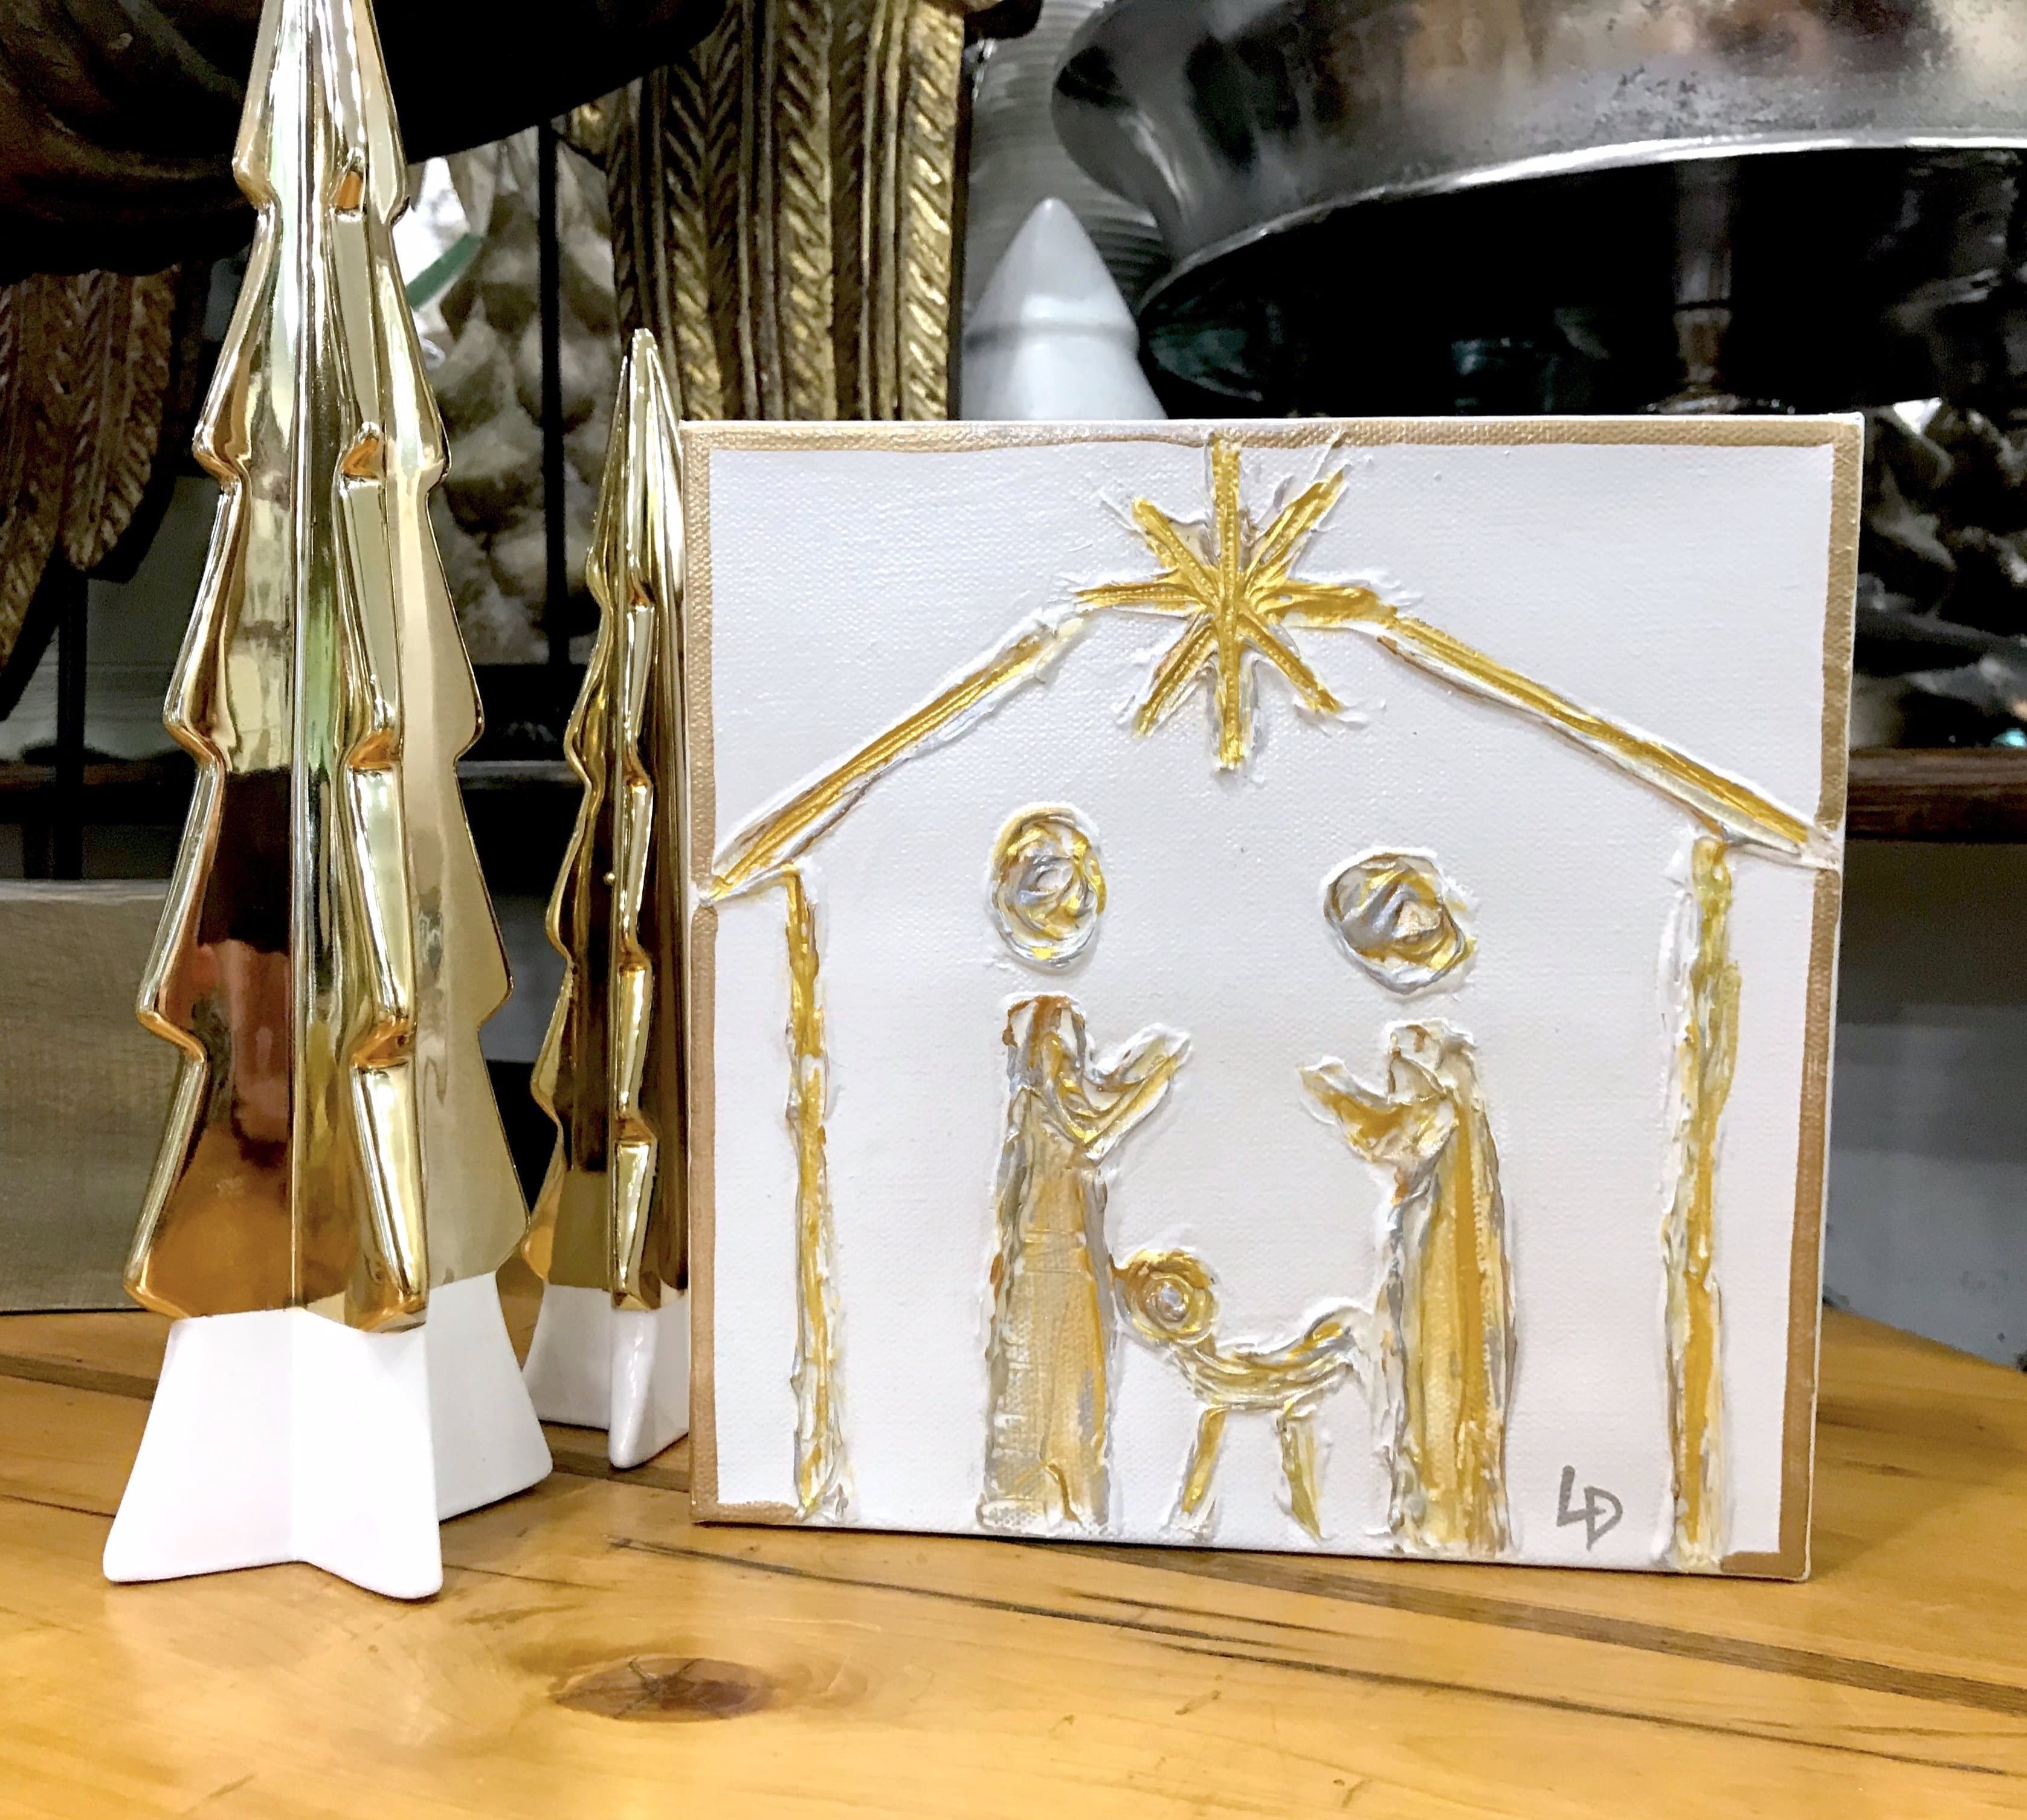 Lisa Devlin Designs - Lisa Devlin Designs Hand Painted Nativity on Canvas - Little Miss Muffin Children & Home